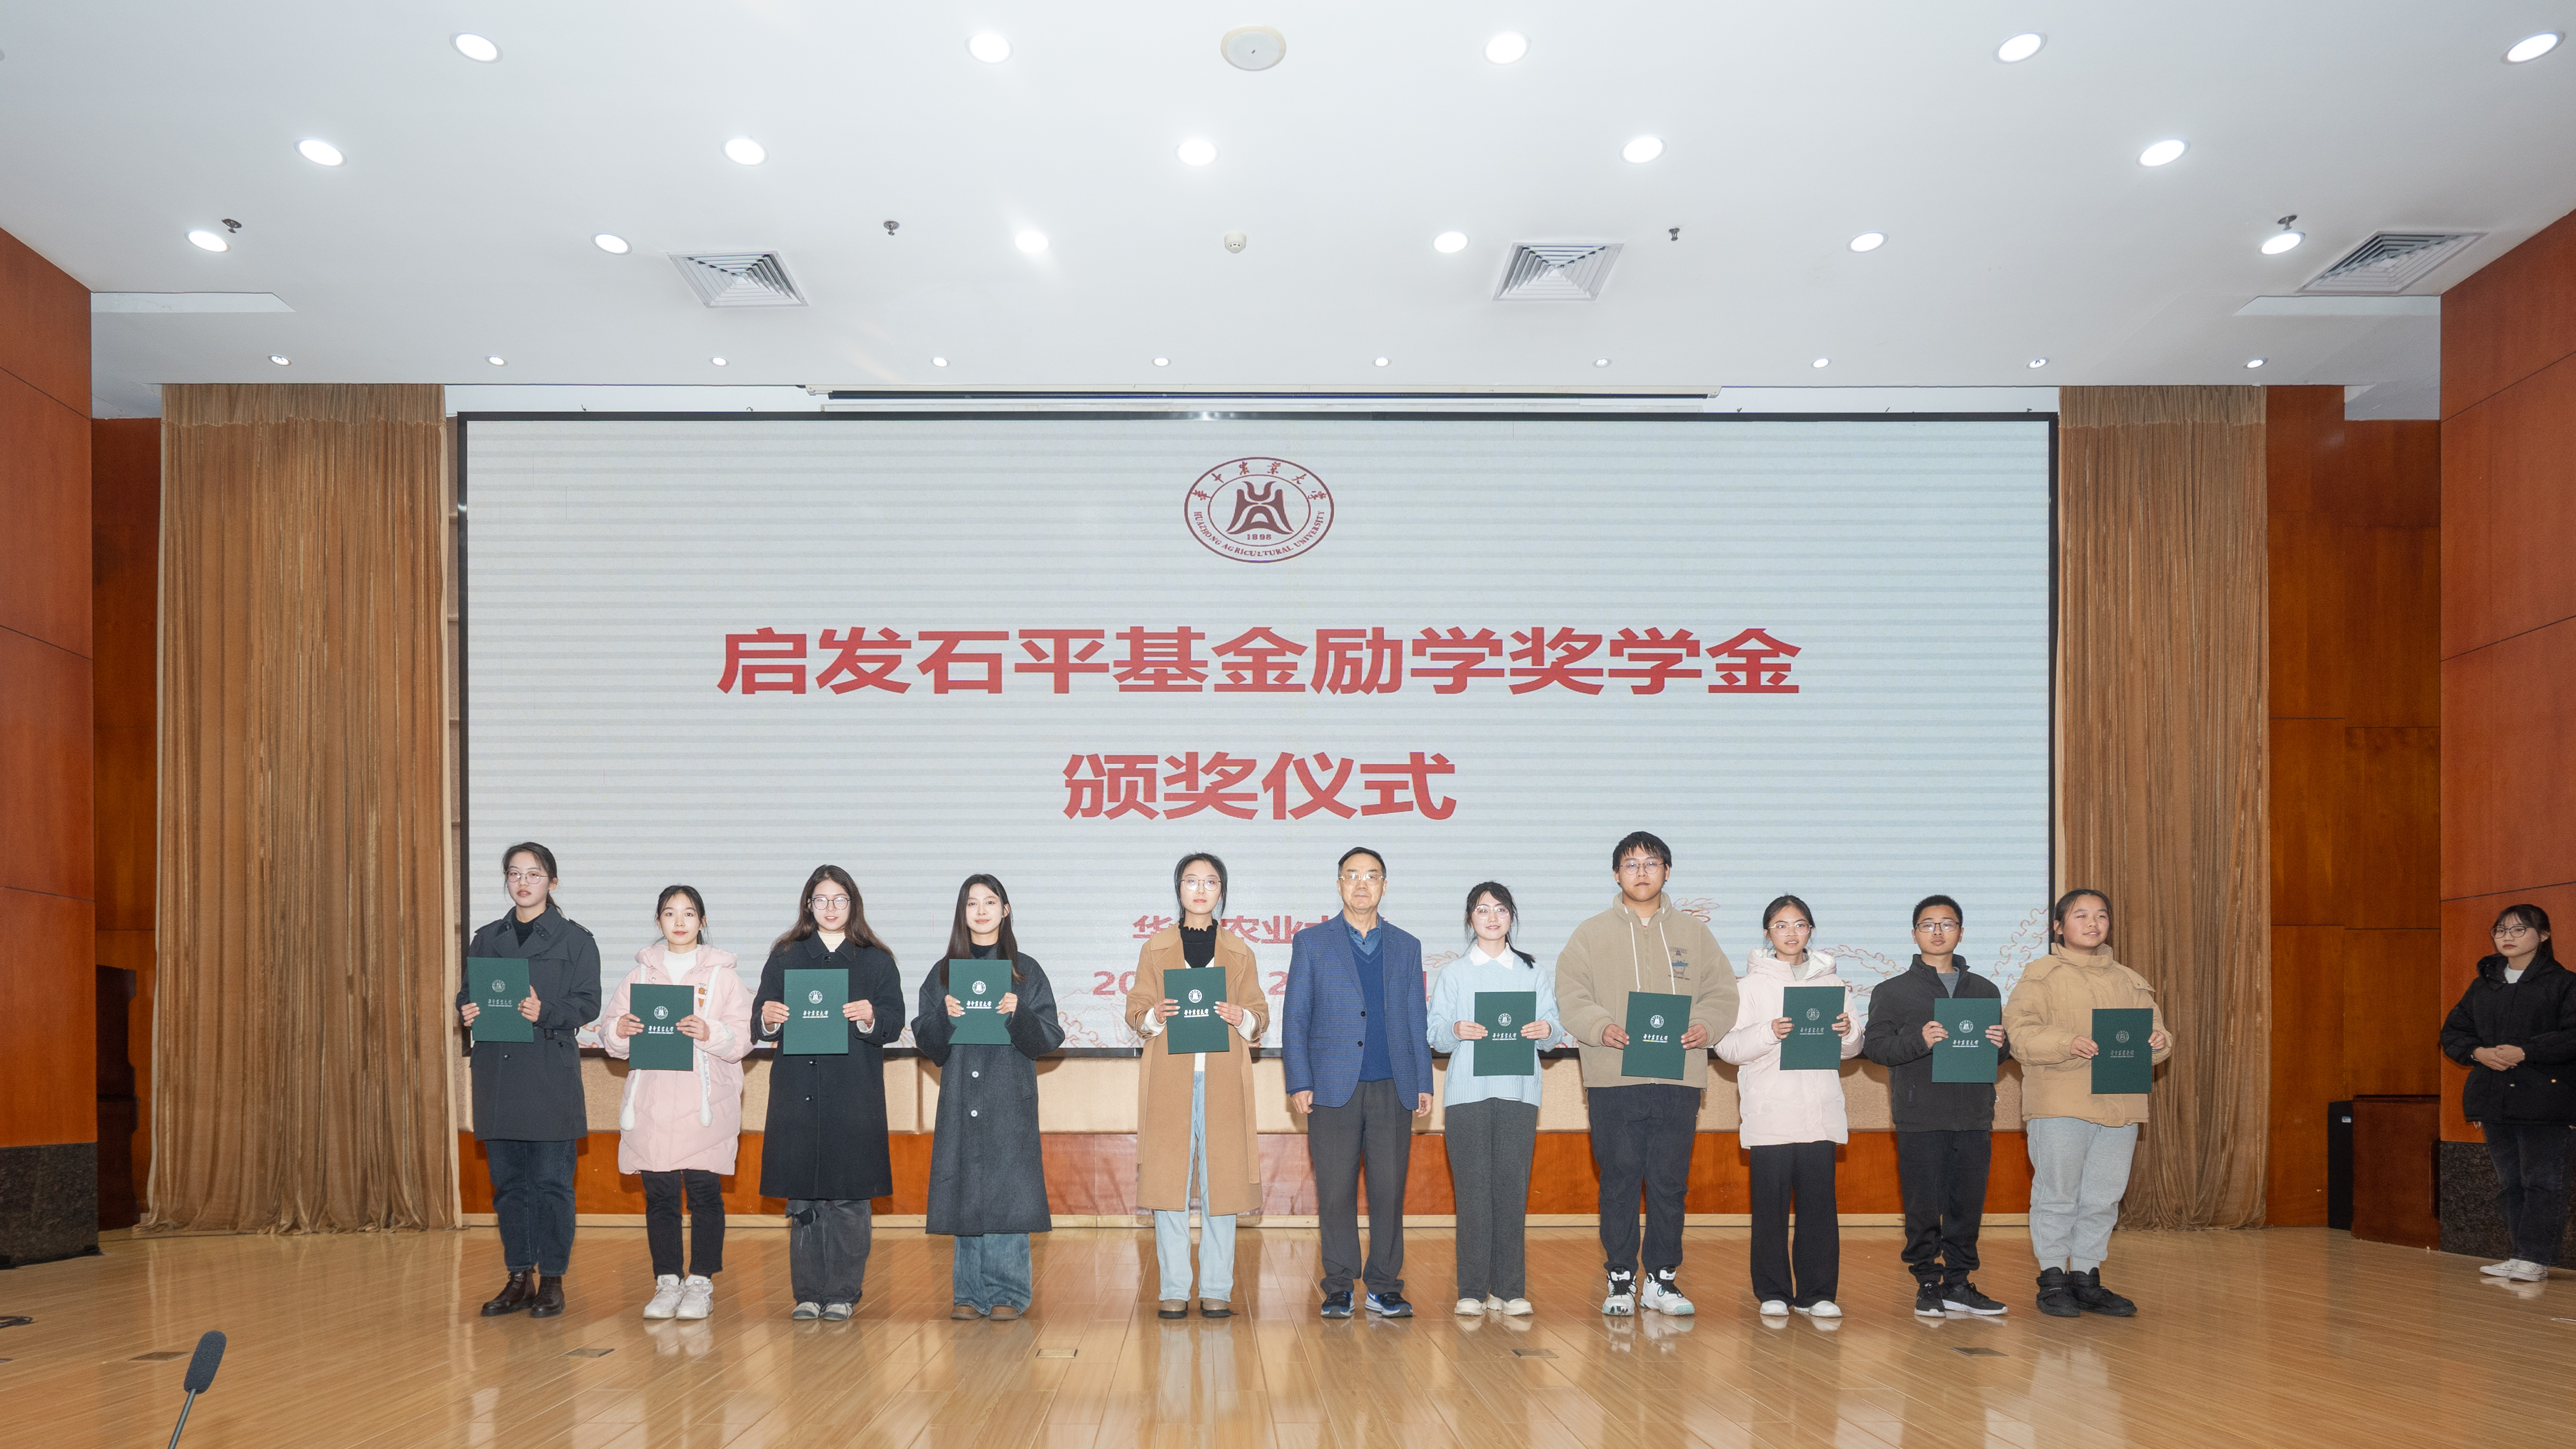 1 张启发院士为获奖同学颁发获奖证书(学通社记者 刘博文 摄)